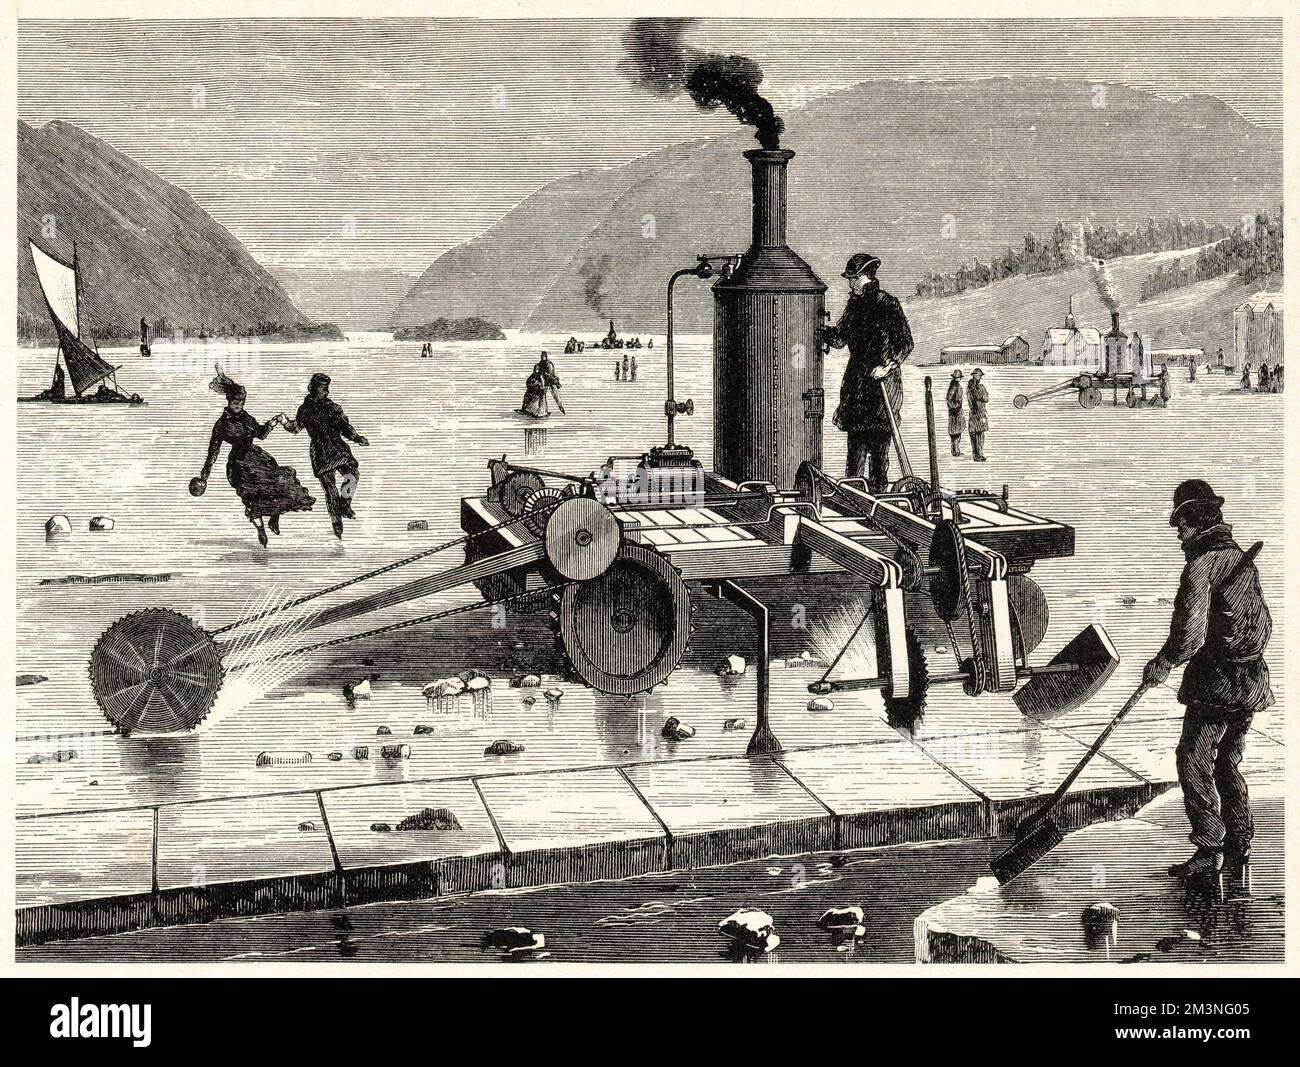 Eine dampfbetriebene Eisschneidemaschine aus dem späten 19.. Jahrhundert, die auf der gefrorenen Exoanse des St. Lawrence River in Kanada betrieben wird. Vielleicht eine der riskanteren Unternehmungen der Geschichte für einen Apparat dieser scheinbaren Masse... Datum: Ende des 19.. Jahrhunderts Stockfoto